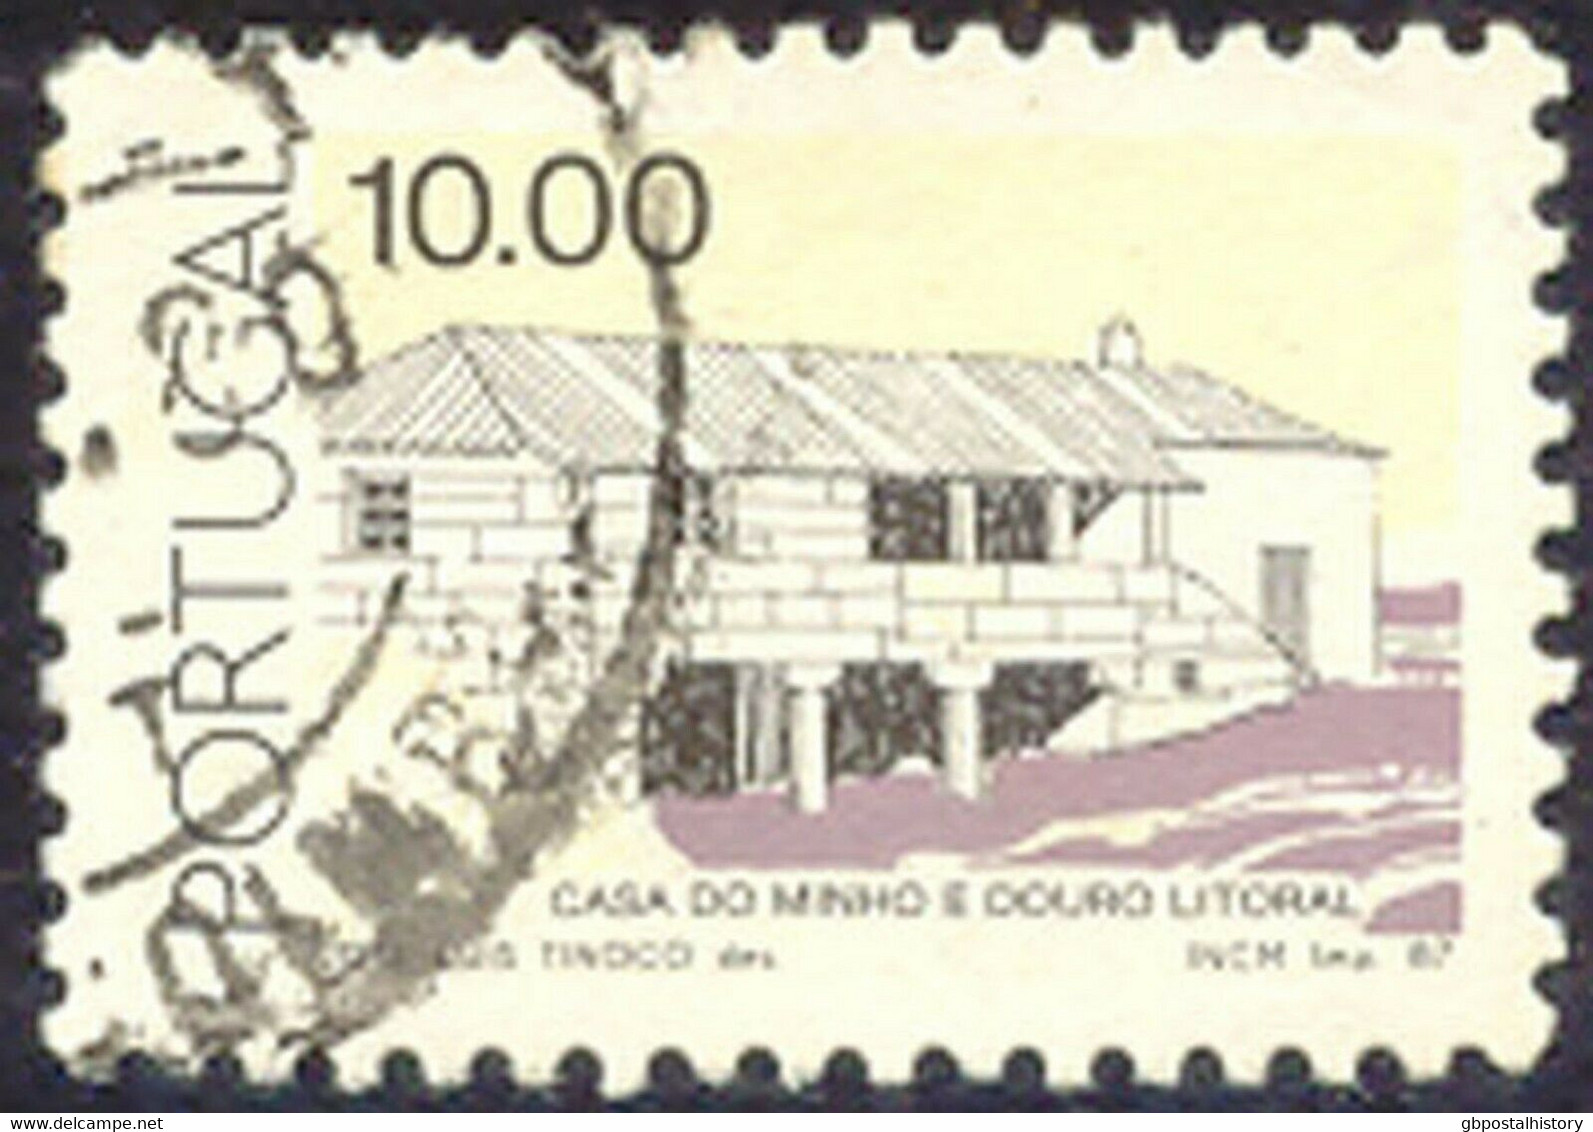 PORTUGAL 1987 10.00 (E.) Landhaus Minho Und Douro Litoral Gest. MISSING COLOUR - Gebruikt